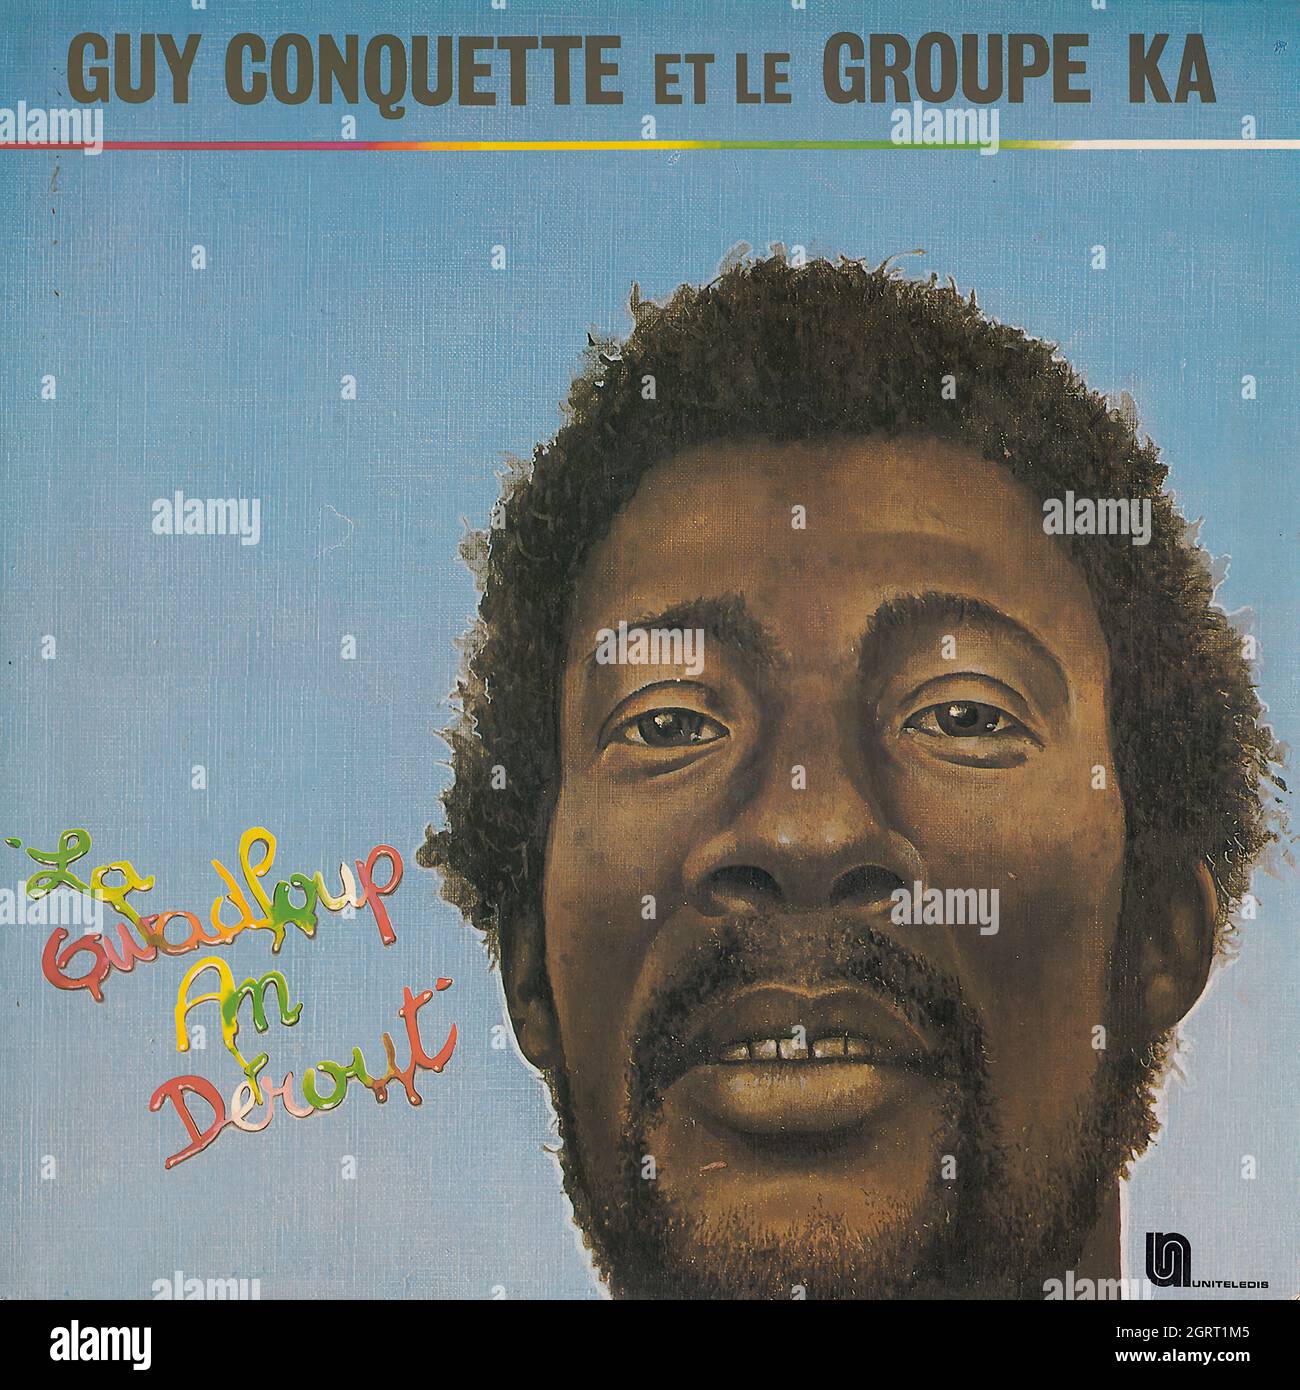 Guy Conquette et le Groupe Ka - La Gwadloup an dérout' - Vintage Vinyl Record Cover Stock Photo